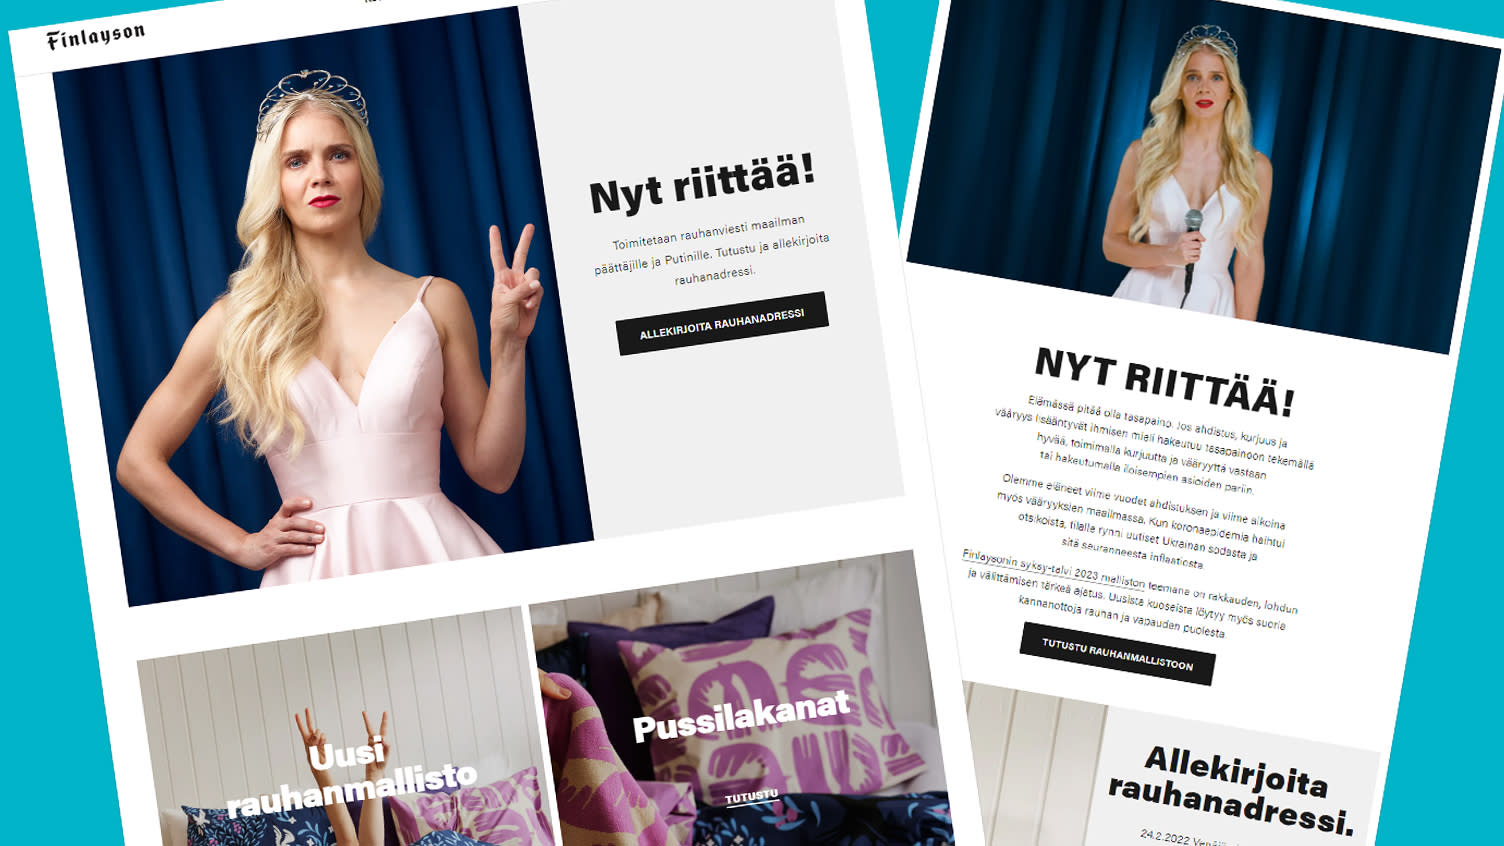 The Finnish textile company Finlayson regrets the Ukrainian campaign